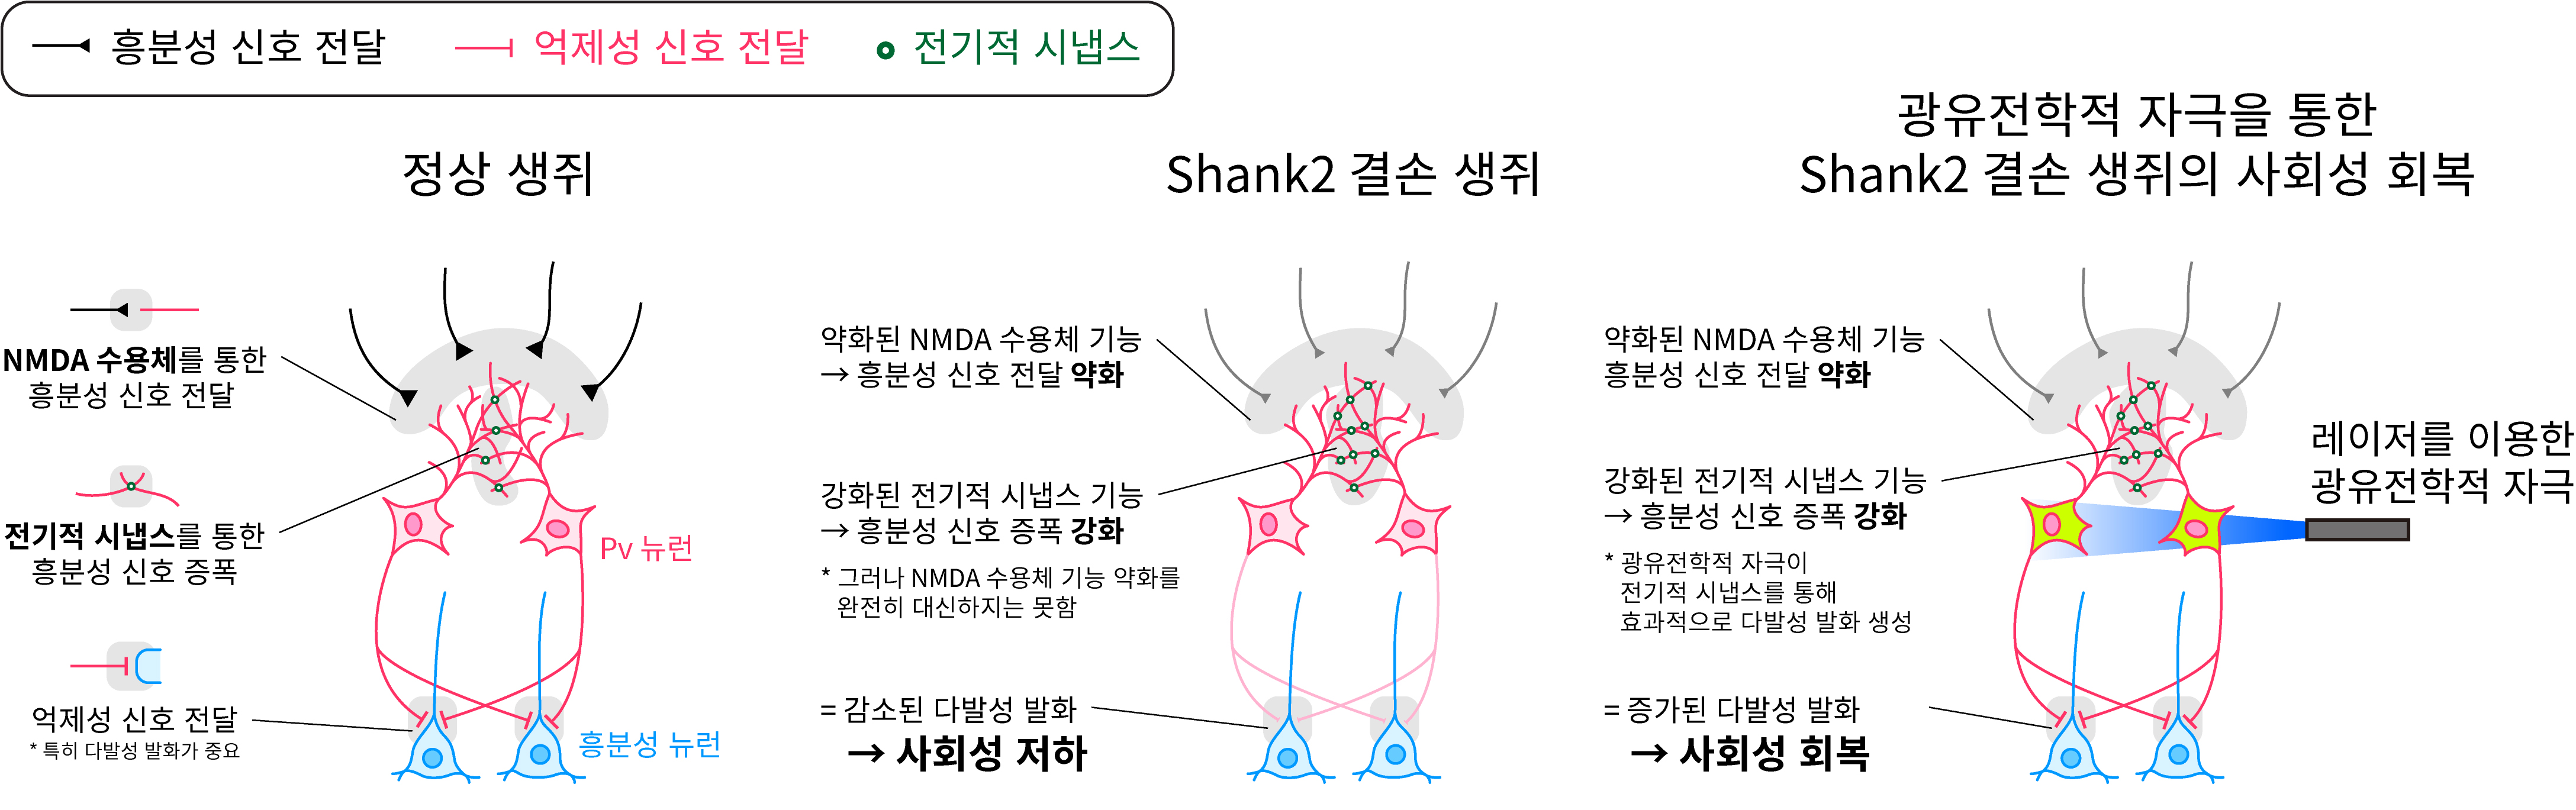 그림 1. Shank2 결손 생쥐의 사회성 저하 및 광유전학 자극을 통한 회복 모식도.jpg